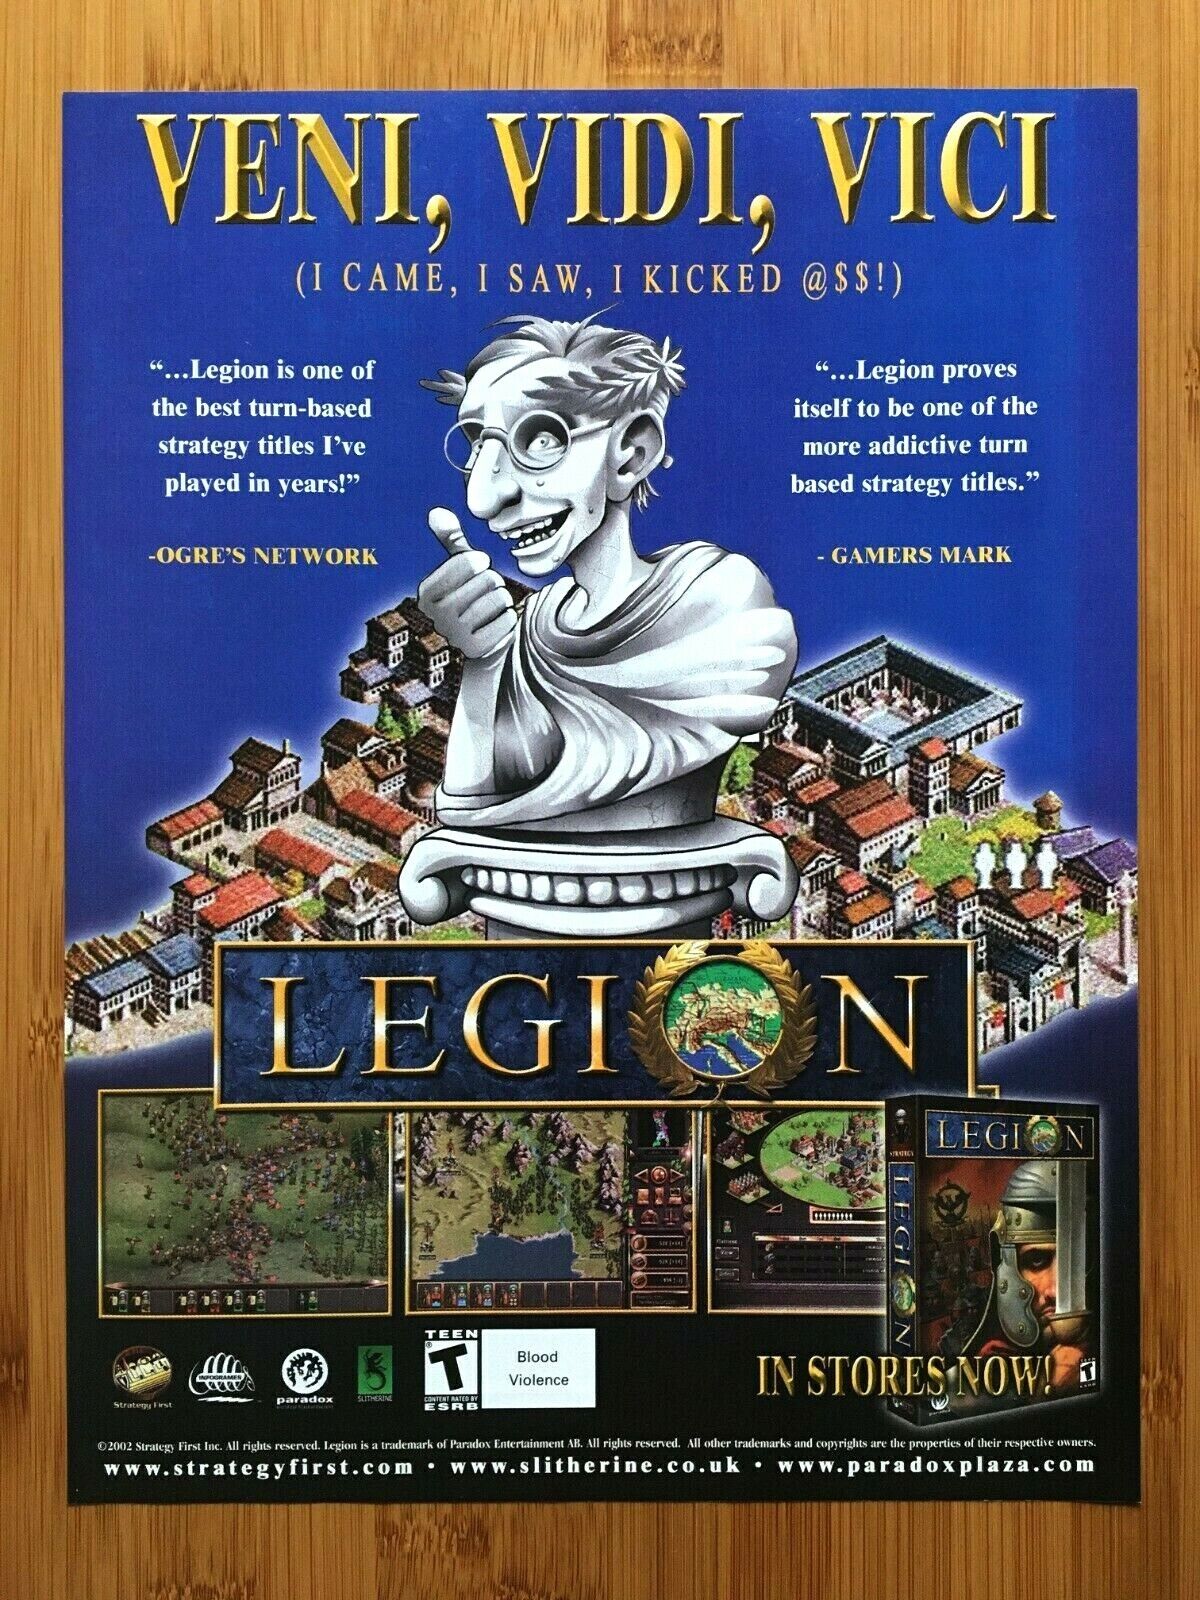 Legion PC 2002 Video Game Print Ad/Poster Advertisement Veni, Vidi, Vici Funny